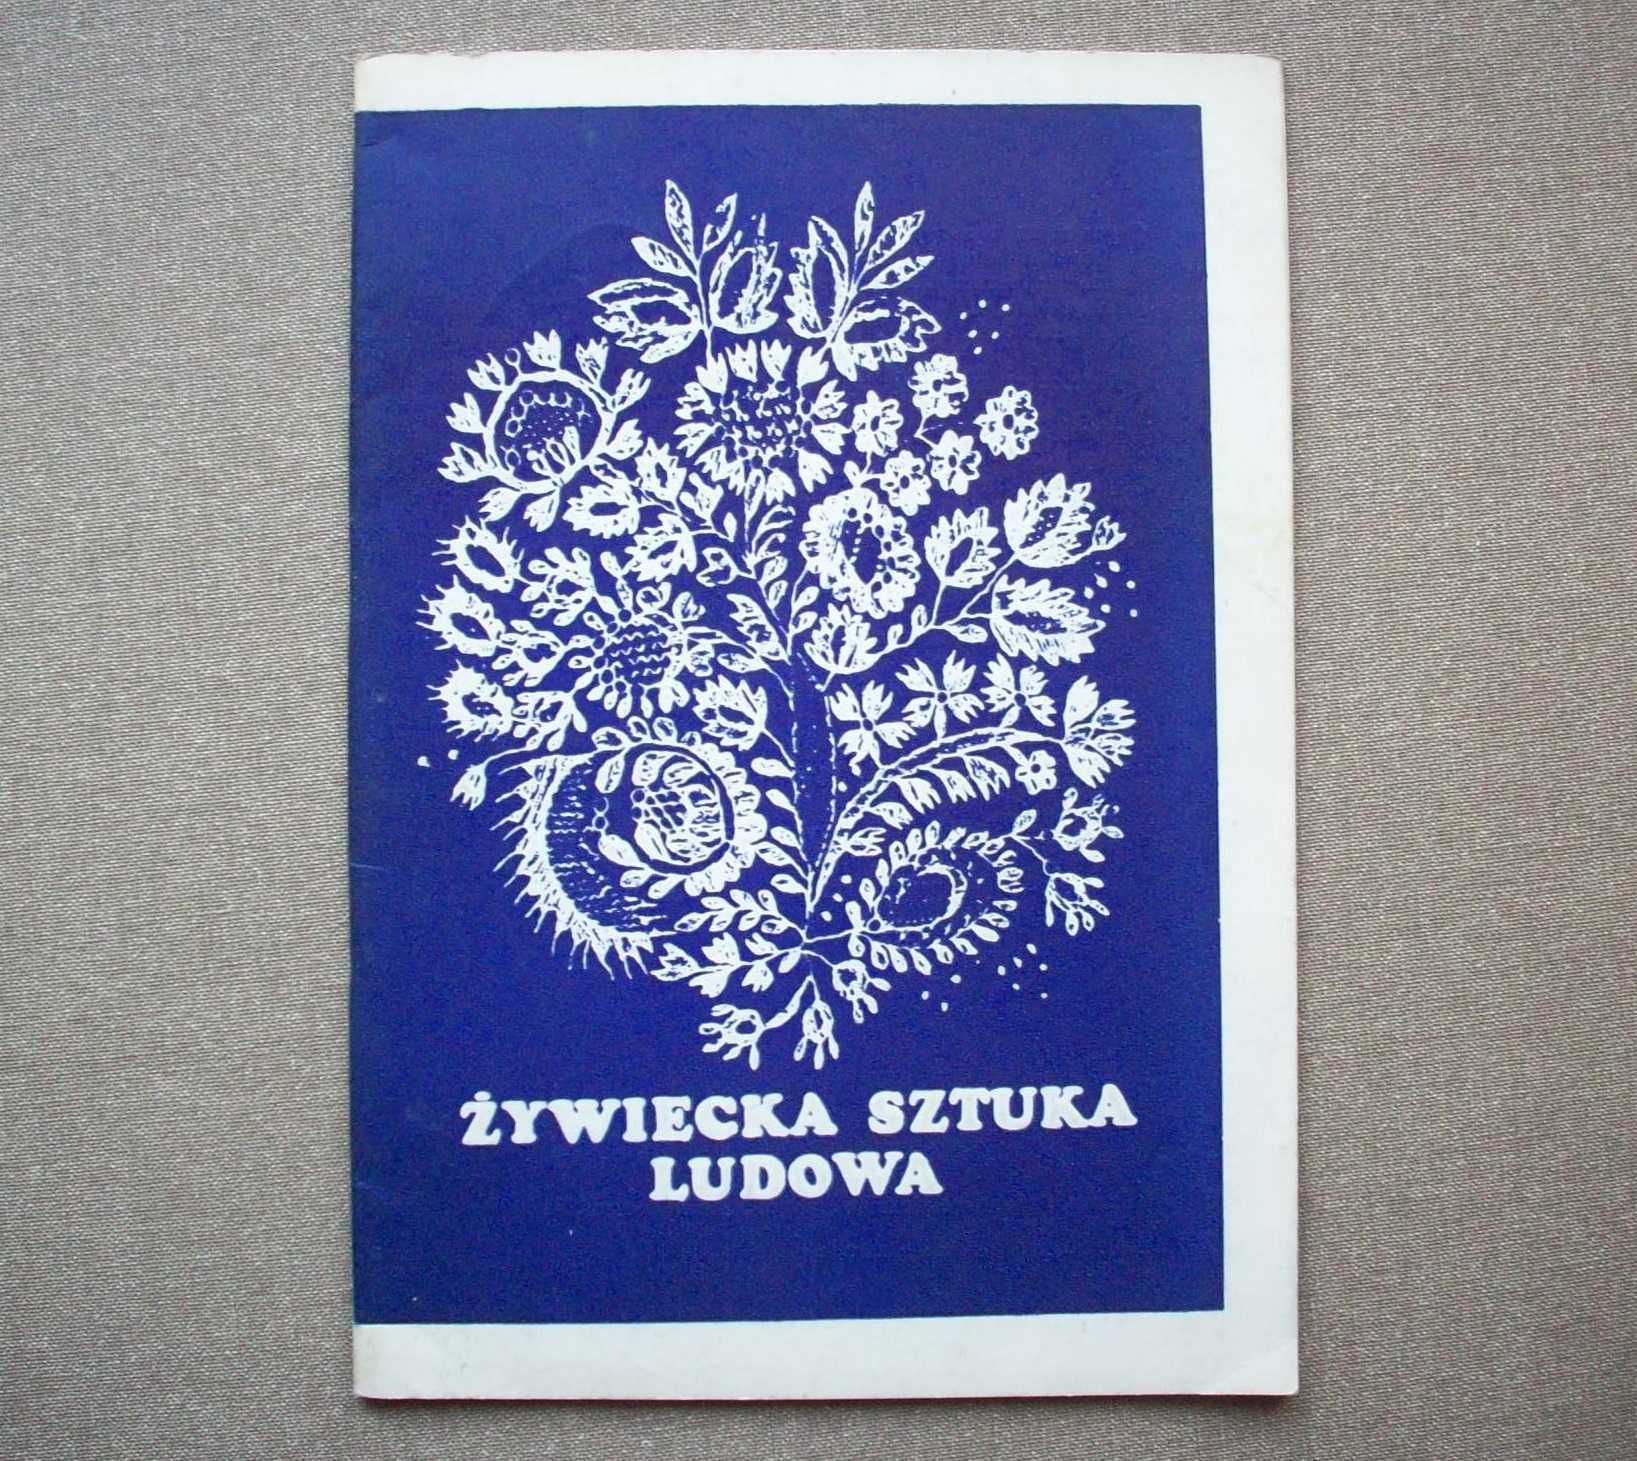 Żywiecka Sztuka Ludowa, katalog, wystawa 1978.